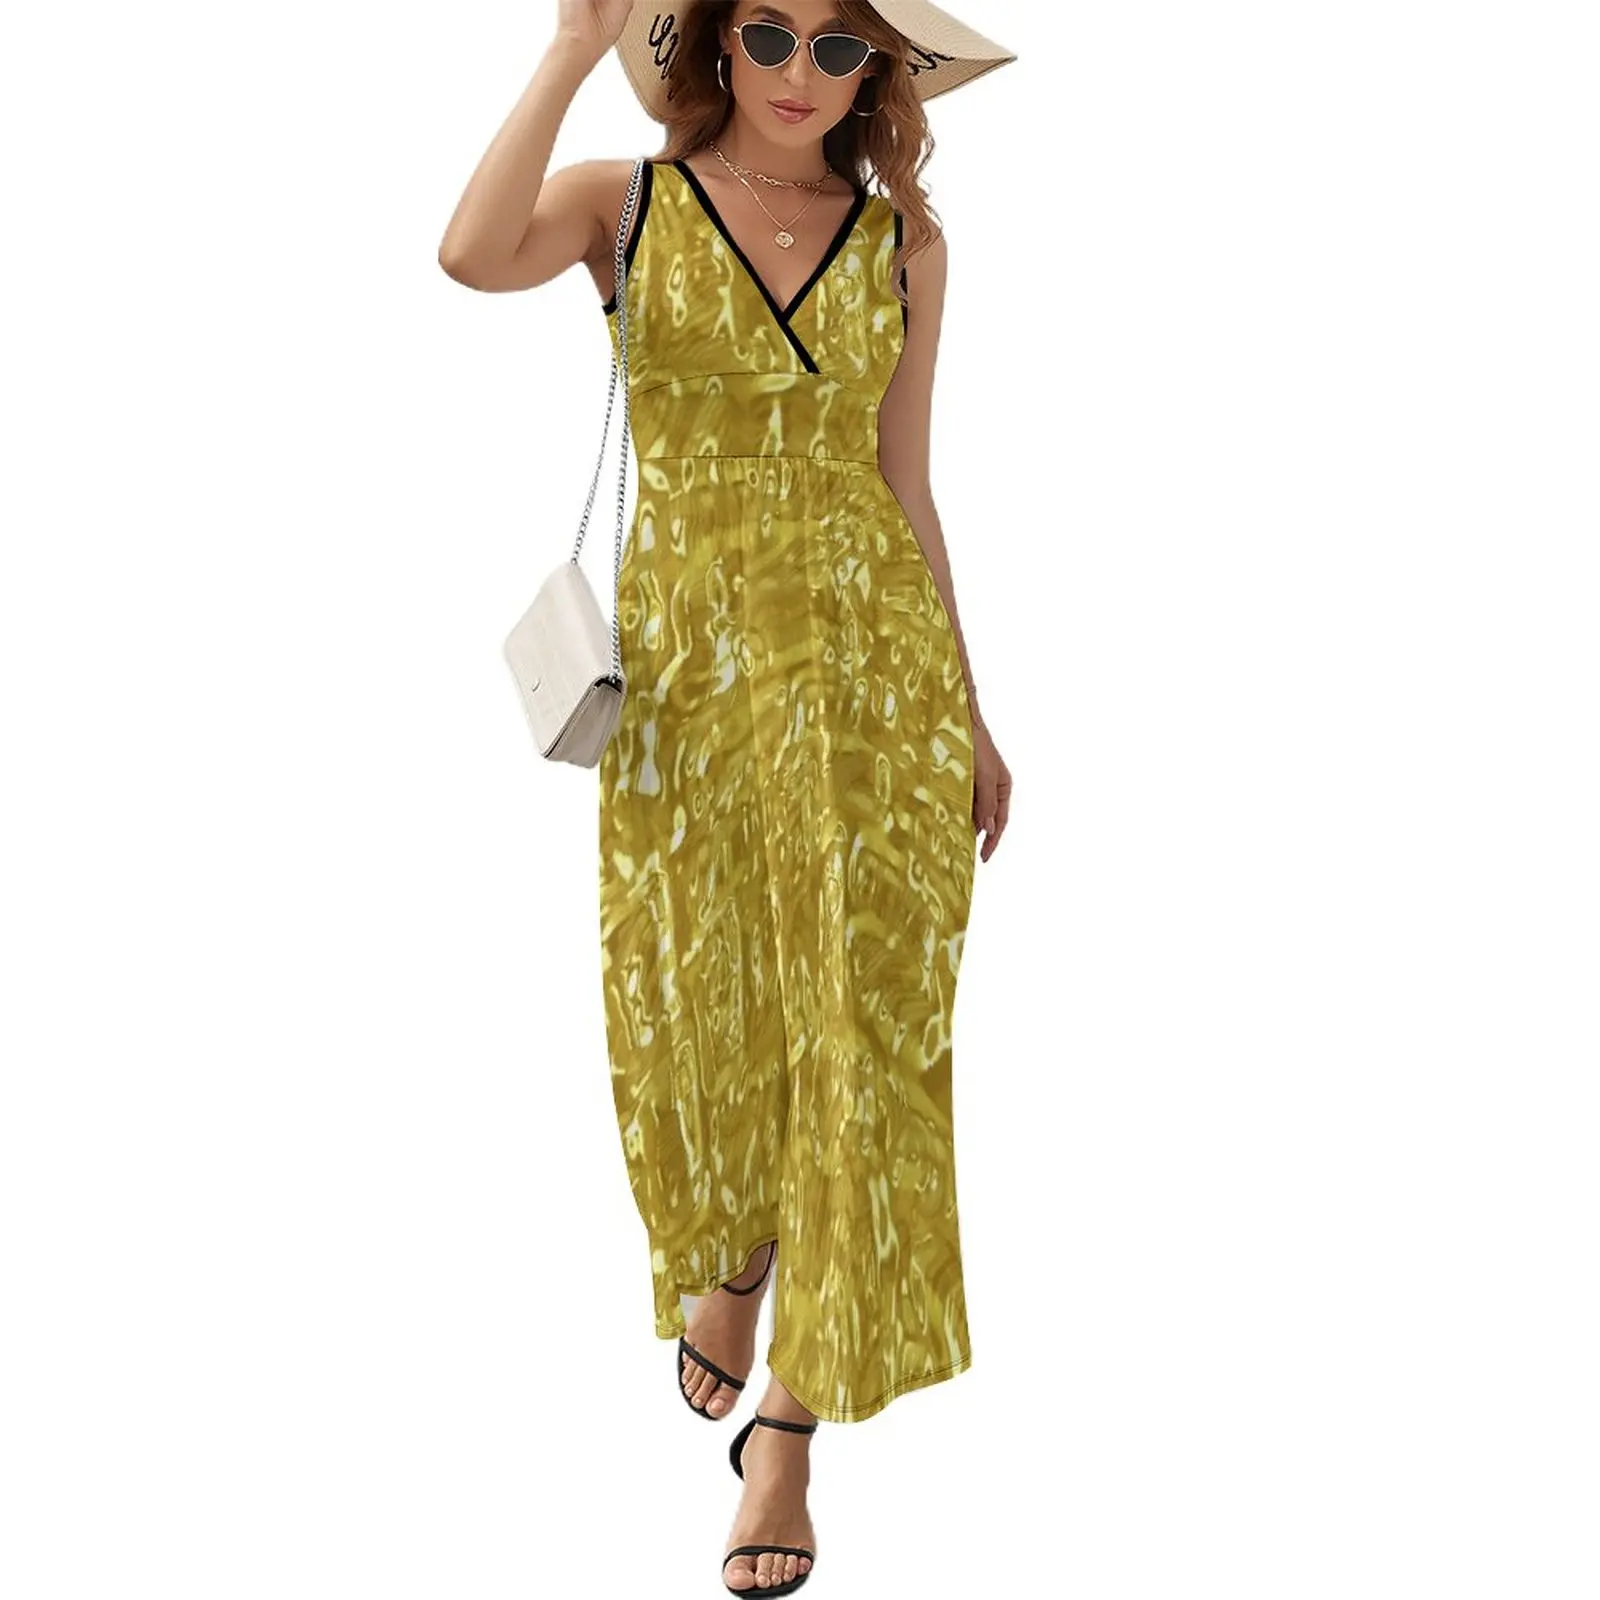 

Платье-Макси женское с золотистой металлической текстурой, длинное пляжное платье в стиле бохо, с абстрактным блестящим искусством, с принт...